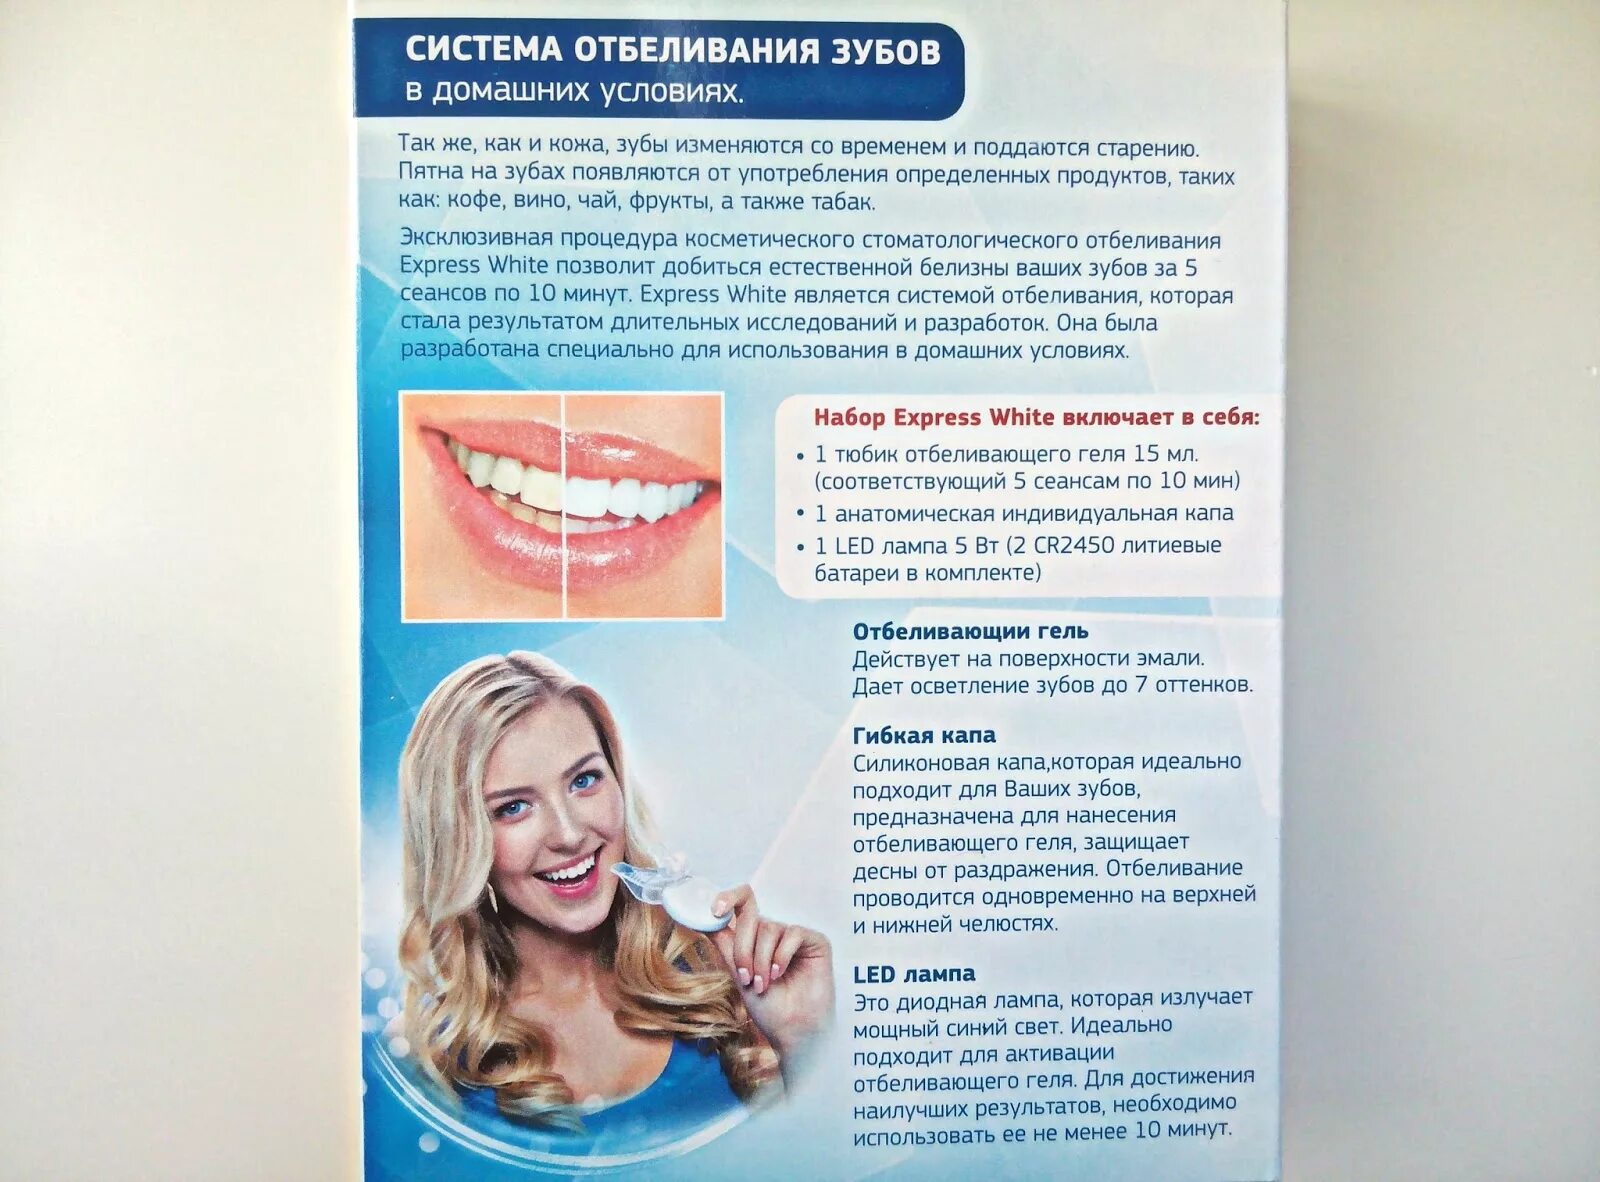 Пить после отбеливания зубов. Отбеливание зубов. Отбеливание зубов памятка. Система домашнего отбеливания зубов. Памятка по отбеливанию зубов.